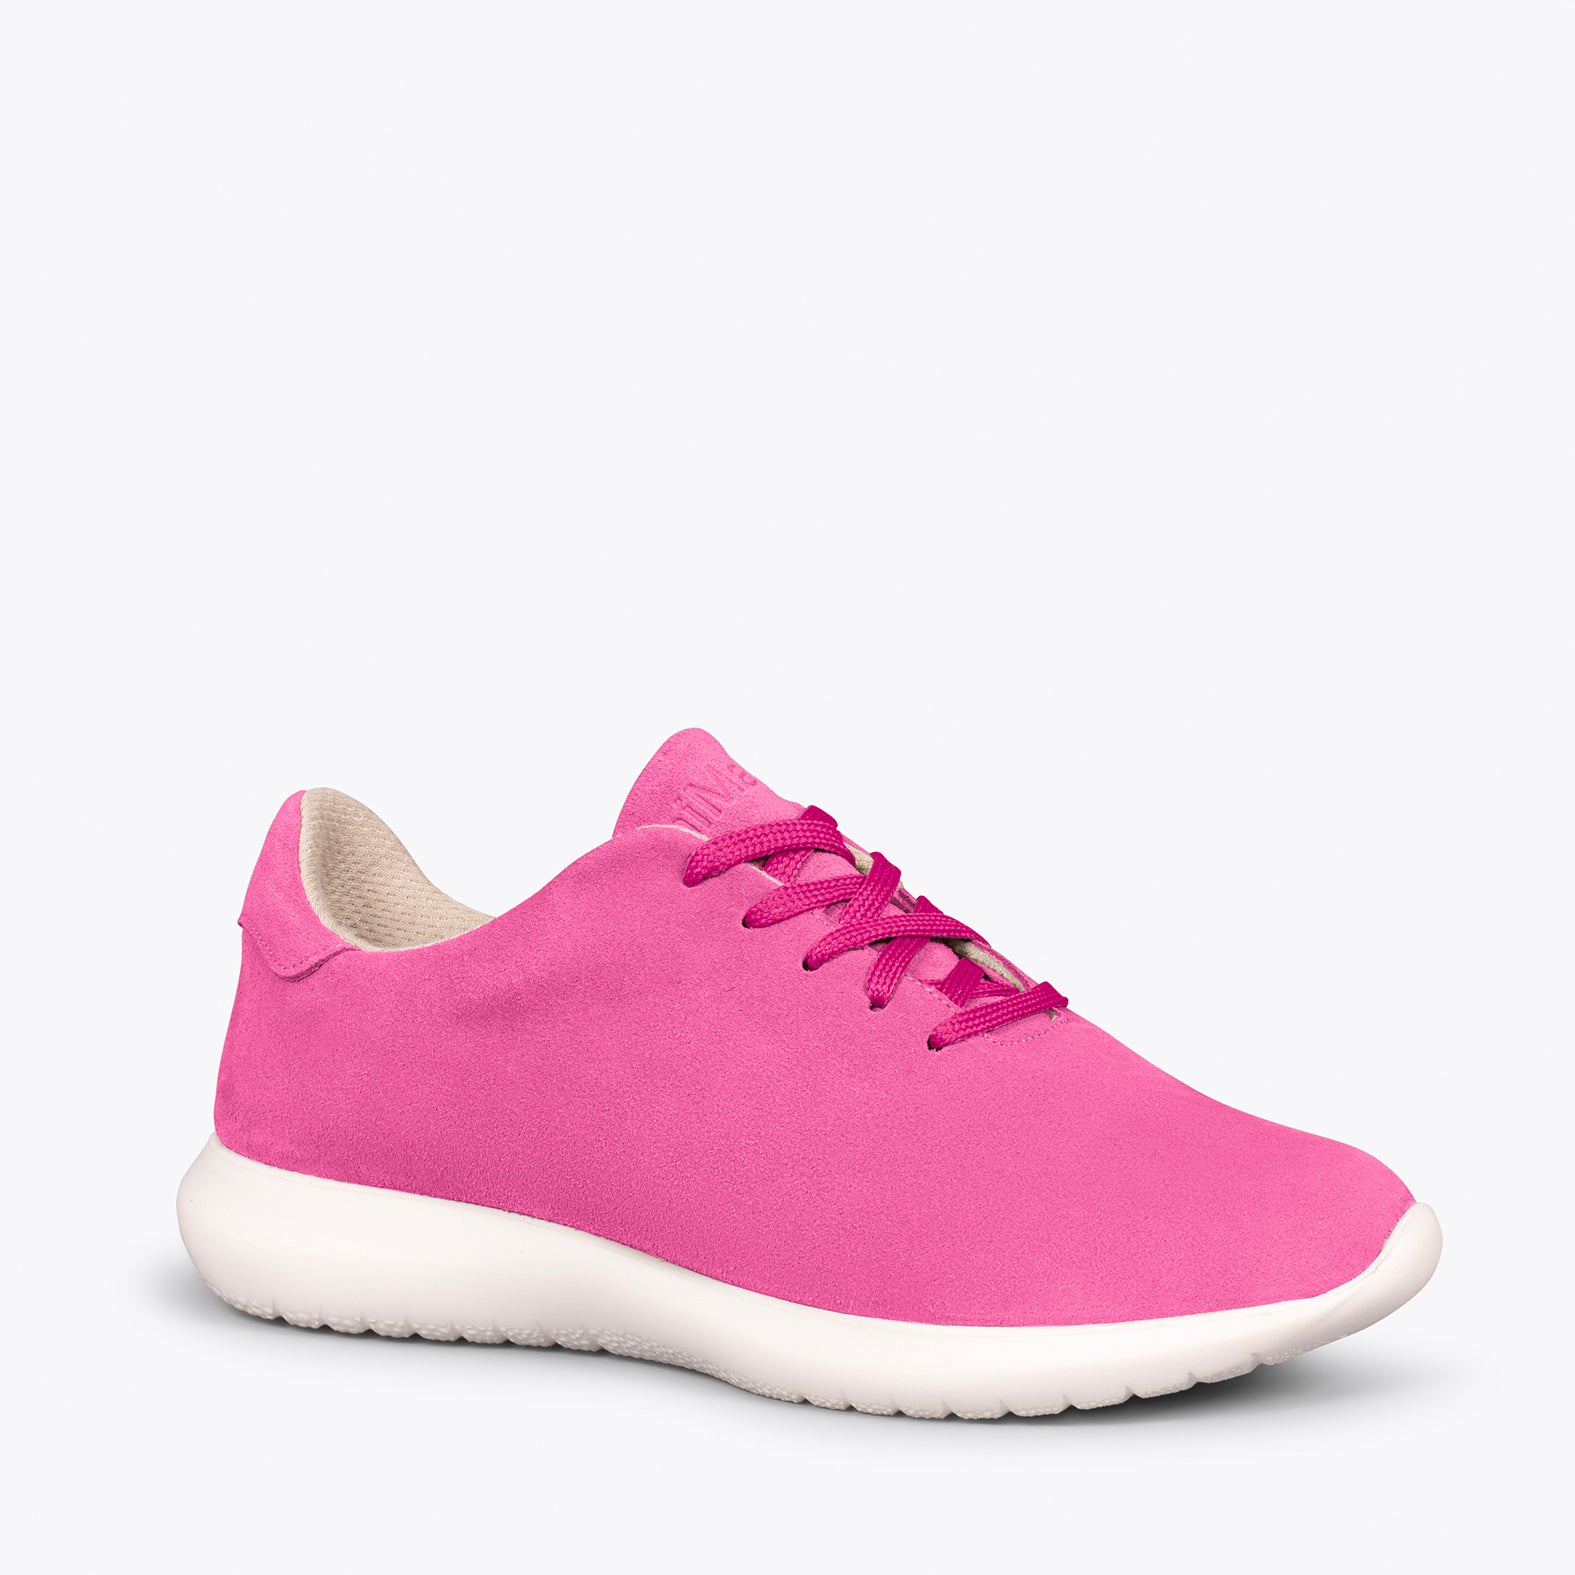 WALK – Chaussures confortables pour femme FUCHSIA